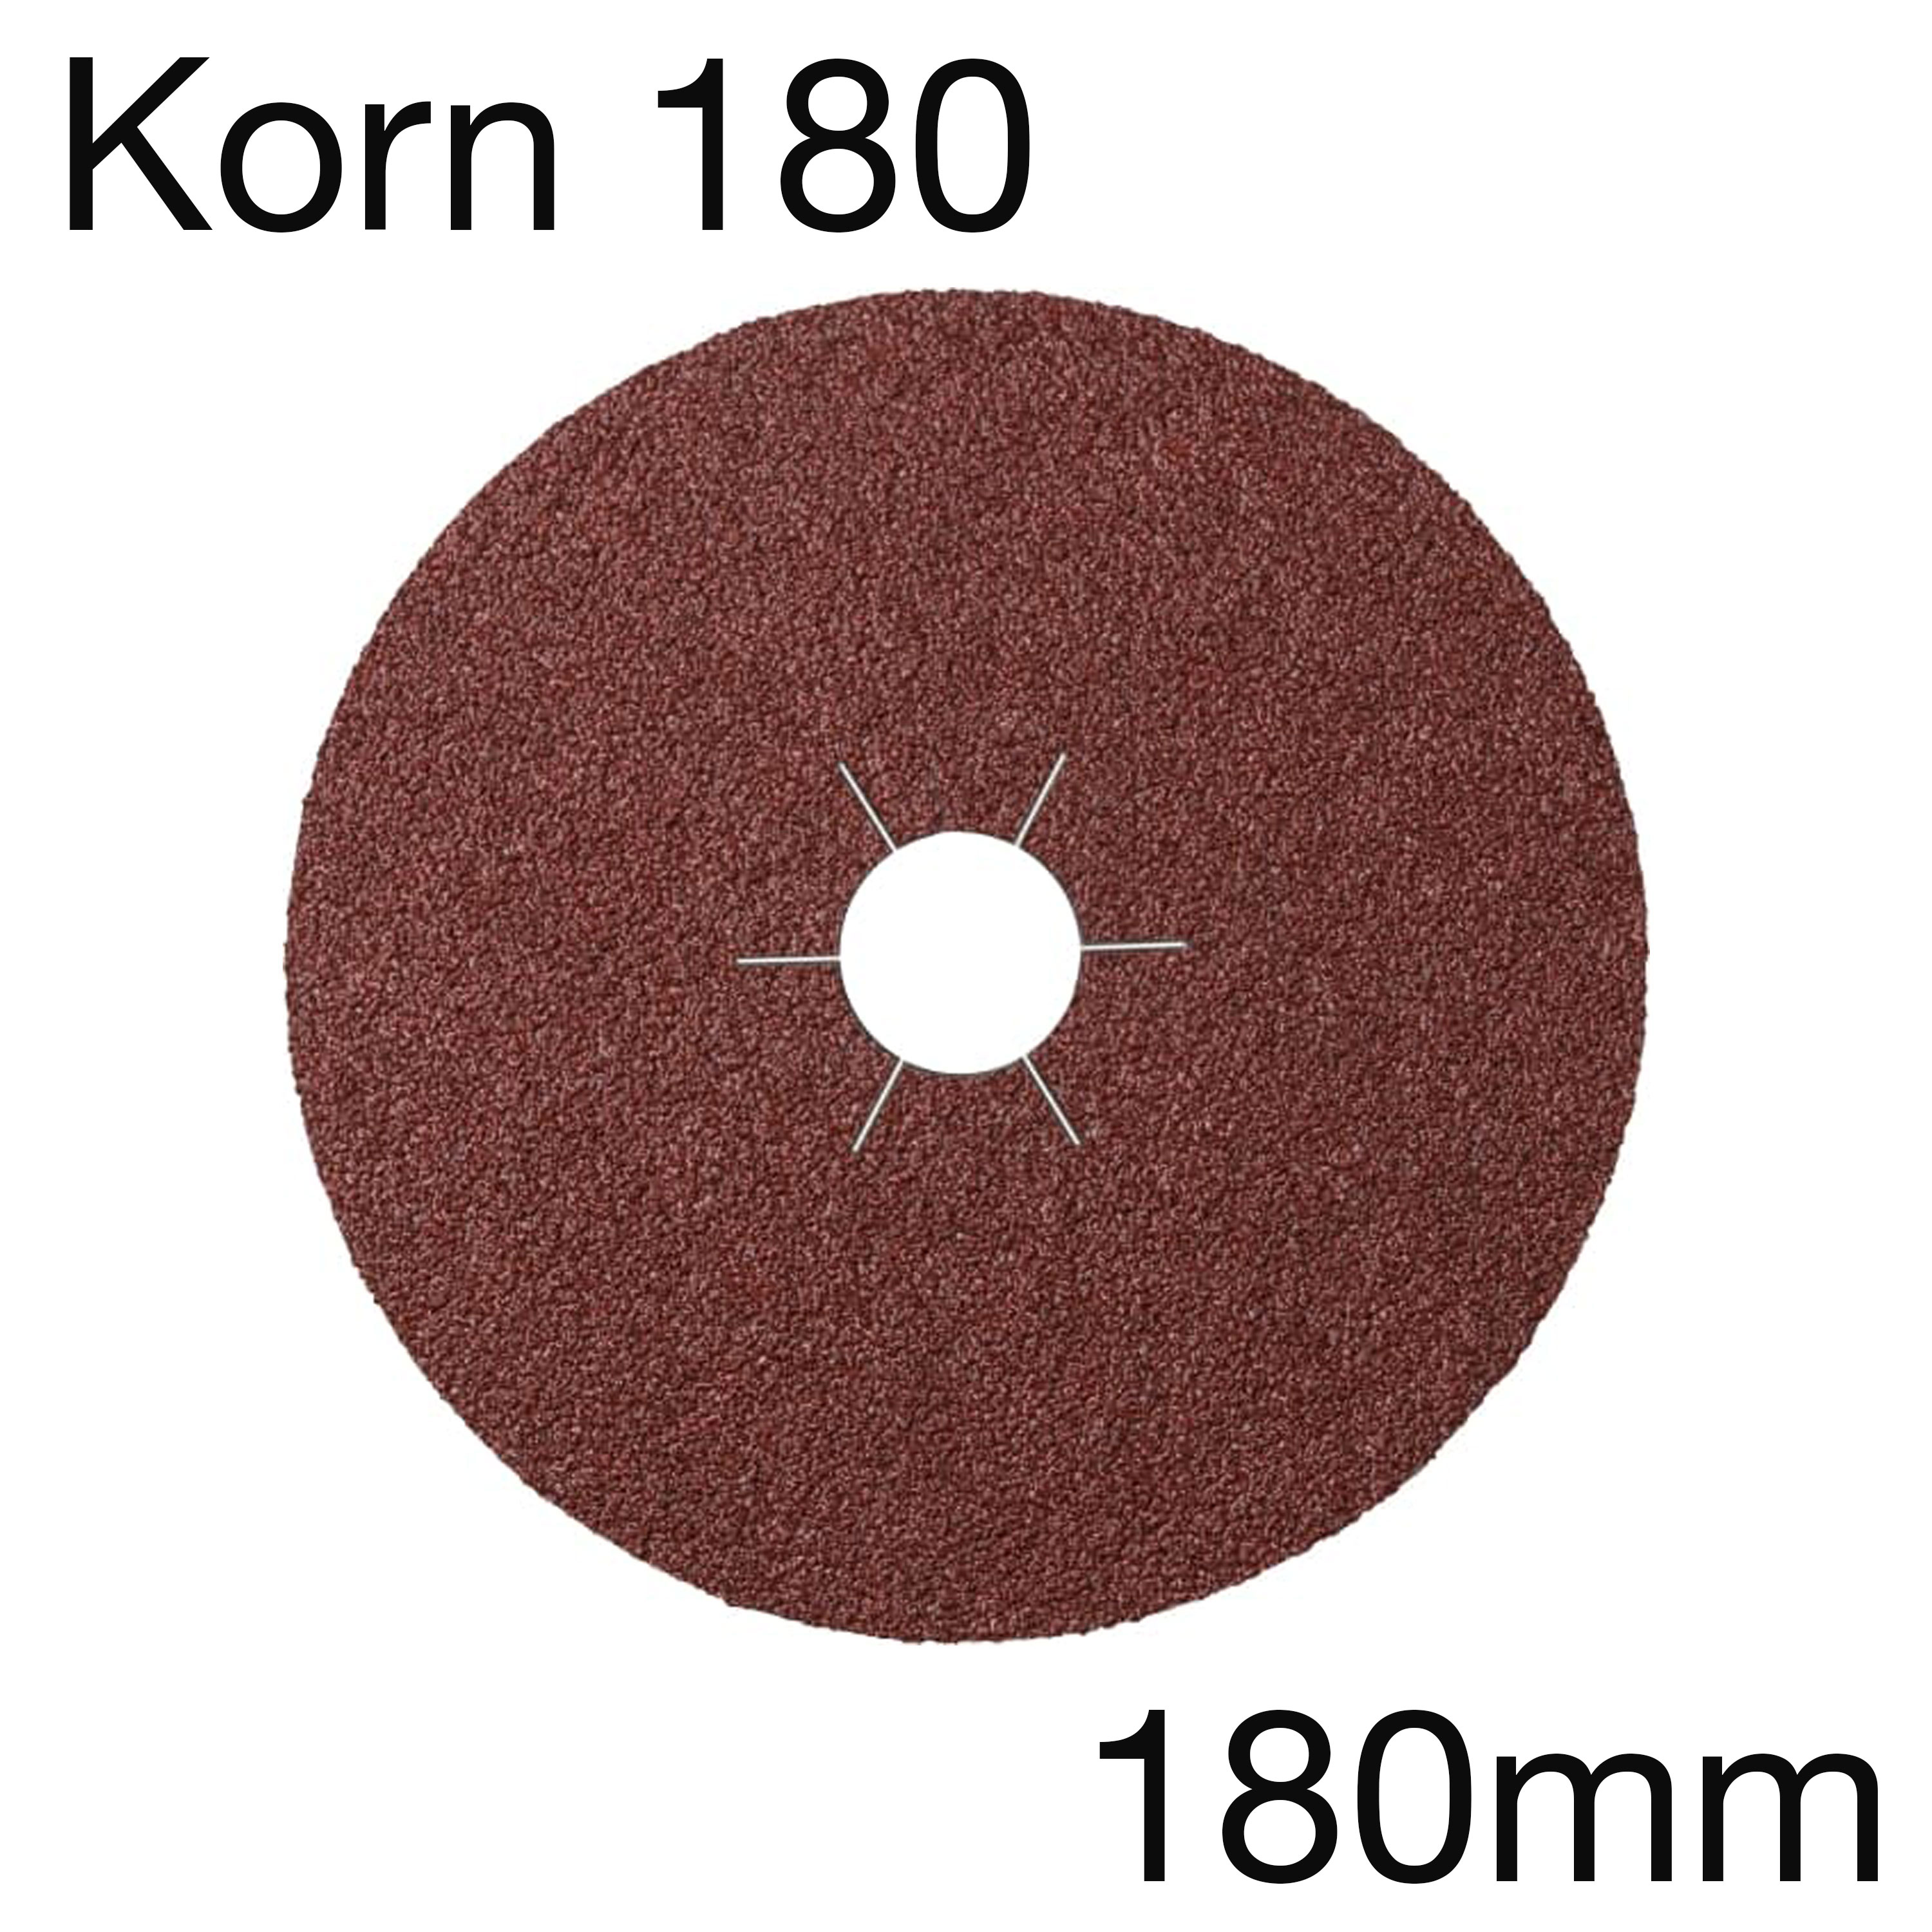 Klingspor CS 561 Fiberscheiben in Aluminiumoxid, Korn 180, 180 x 22mm, Pack mit 25 Stk